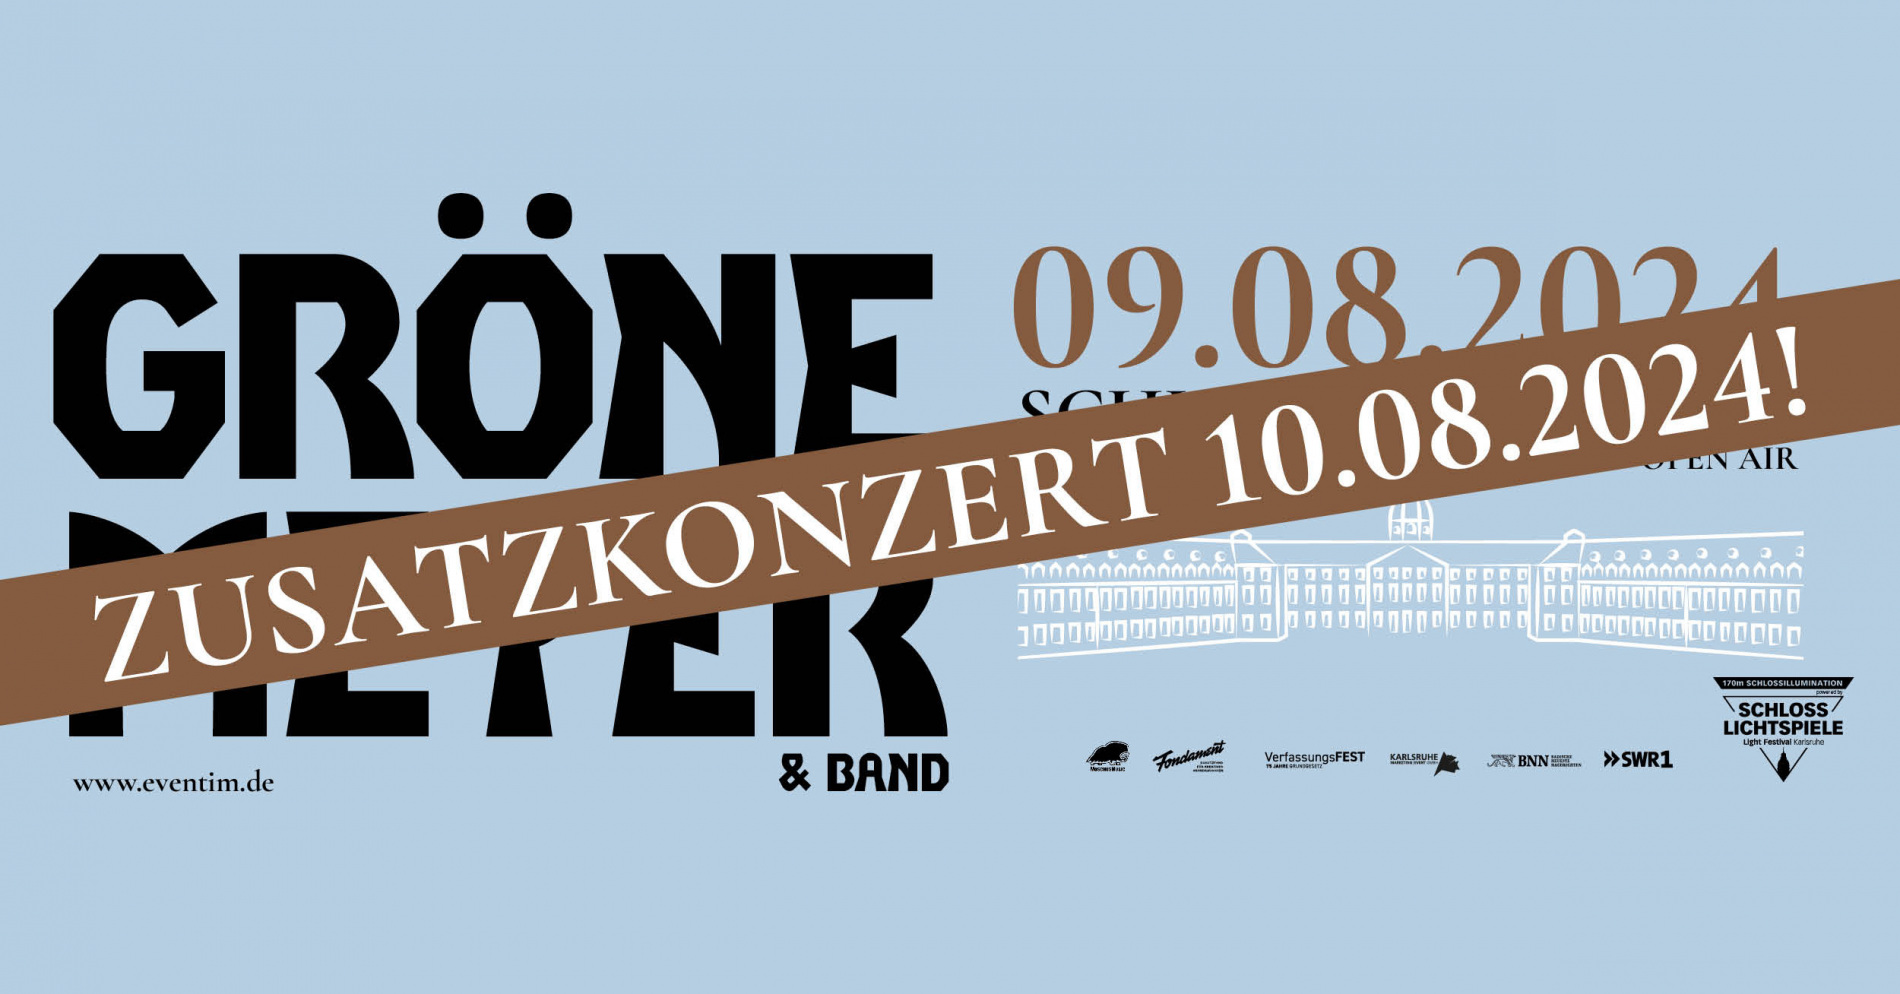 Grönemeyer in Karlsruhe nahezu ausverkauft – Zusatzkonzert am Samstag, 10. August!